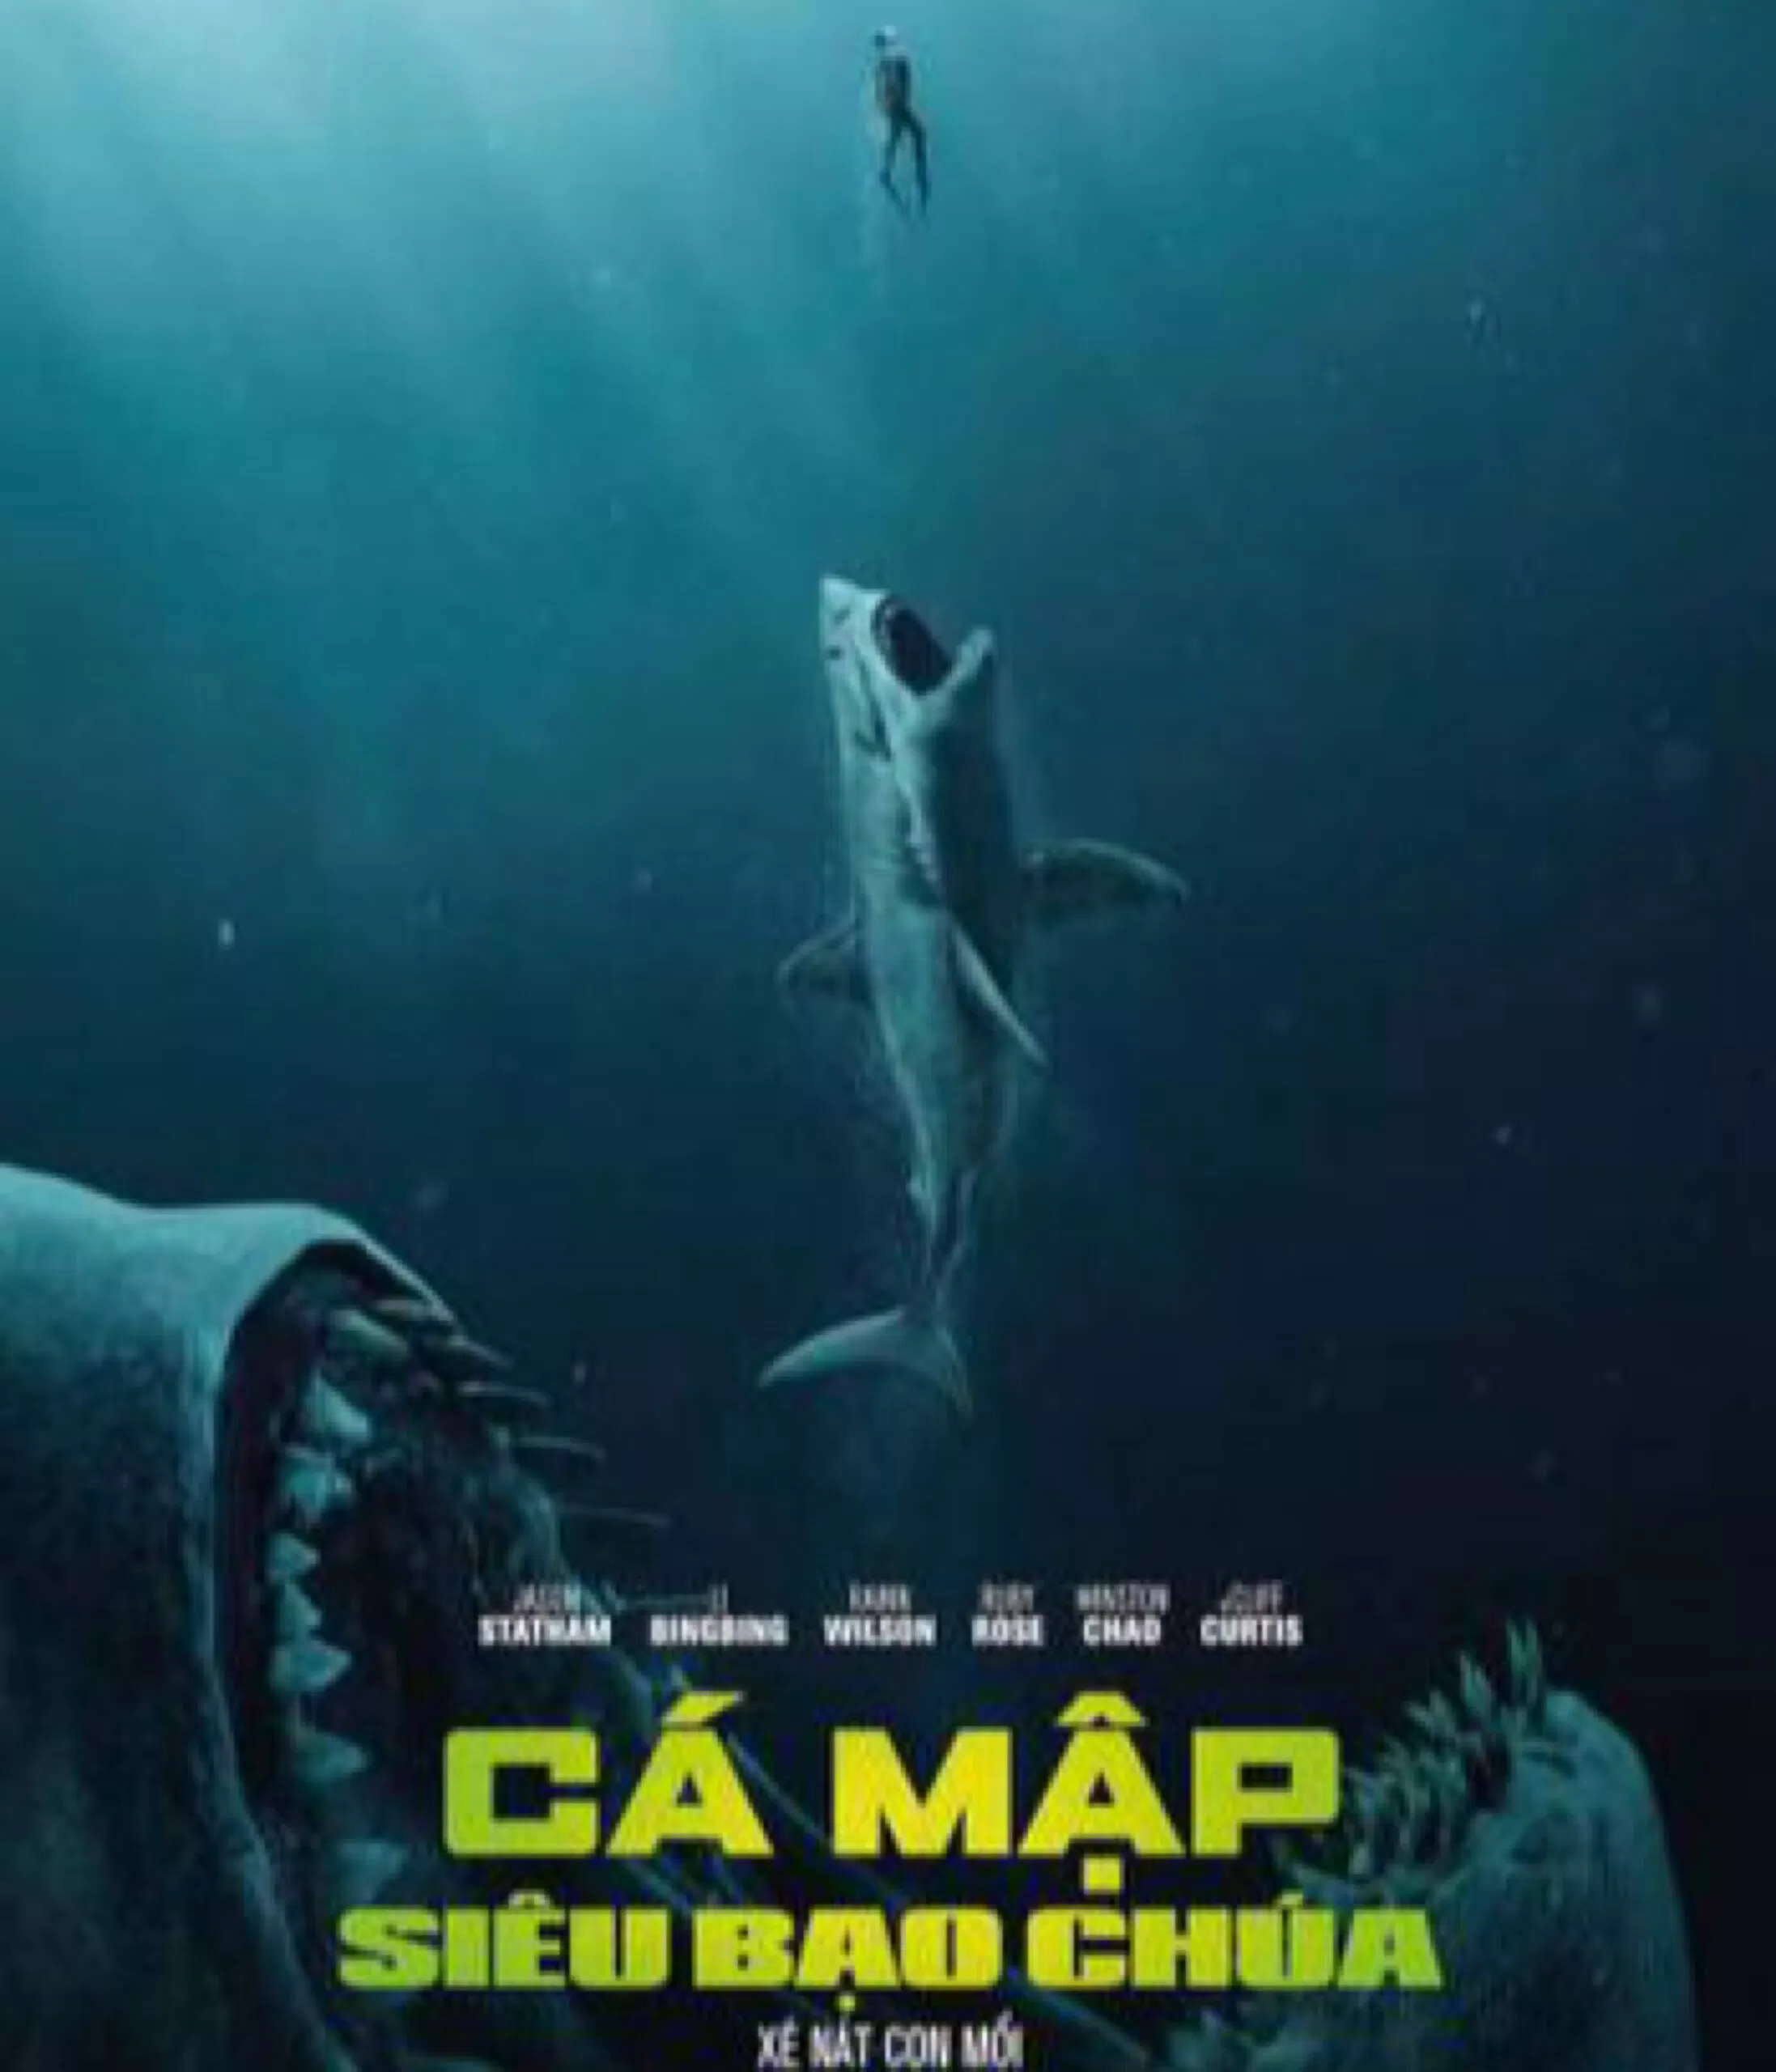 Cá mập siêu bạo chúa là bộ phim ăn khách vào năm 2018(Ảnh:Internet)